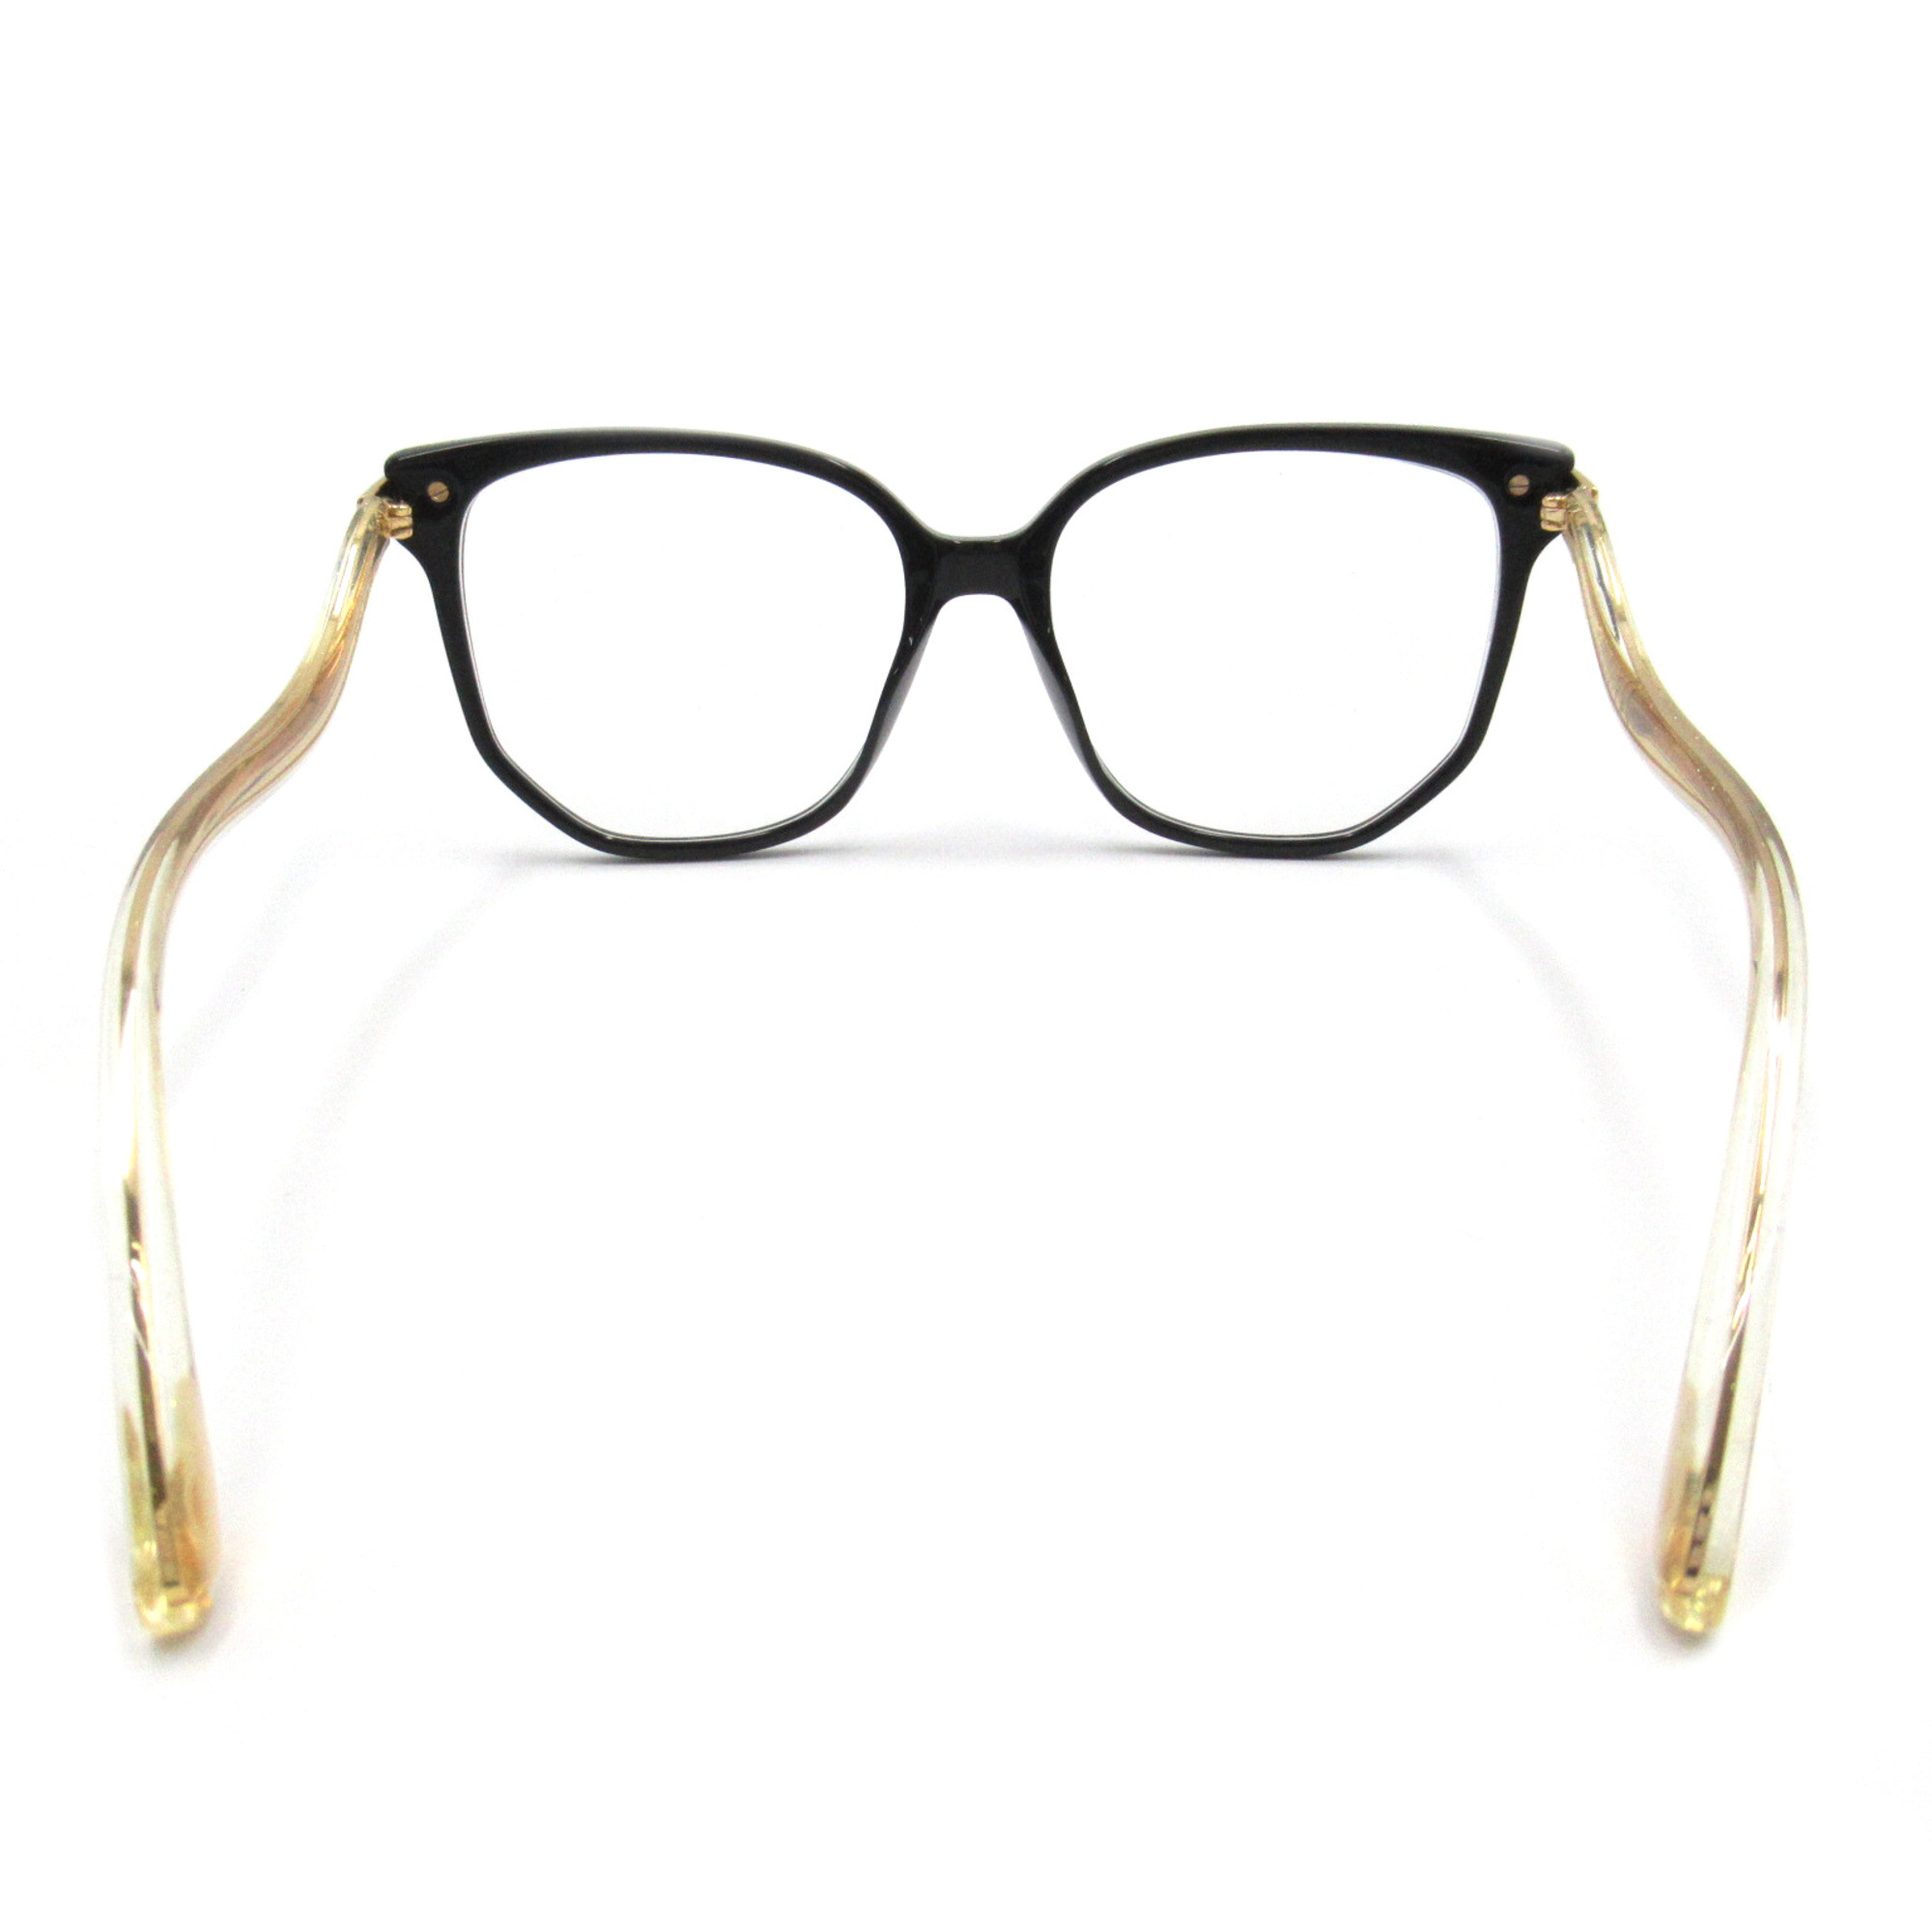 JIMMY CHOO Date Glasses Glasses Frame Black Gold Stainless Steel Plastic 257 807(55)